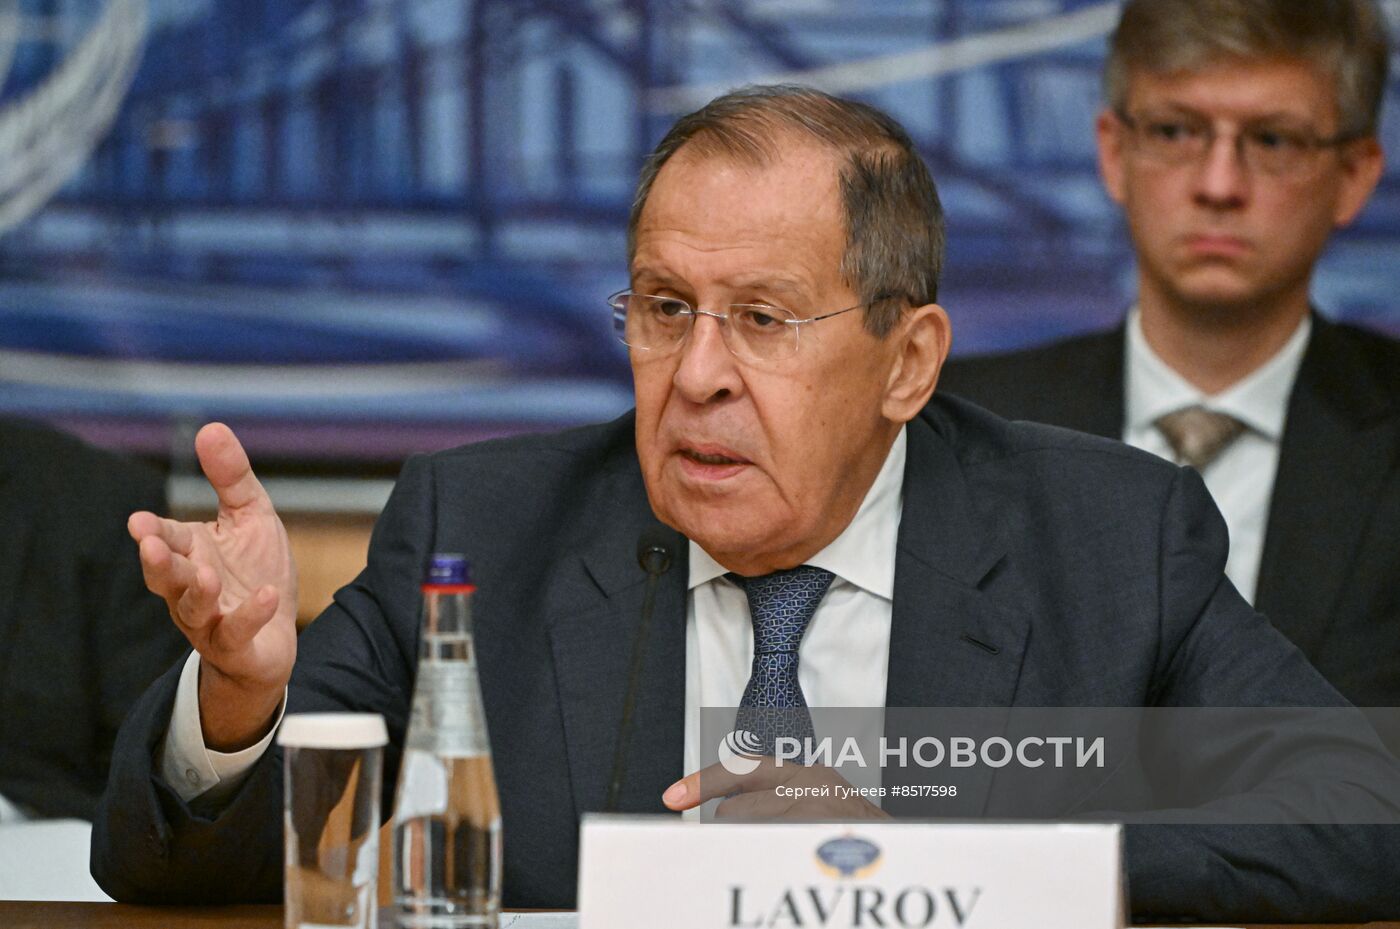 Глава МИД РФ С. Лавров принял участие в мероприятии по урегулированию украинского кризиса